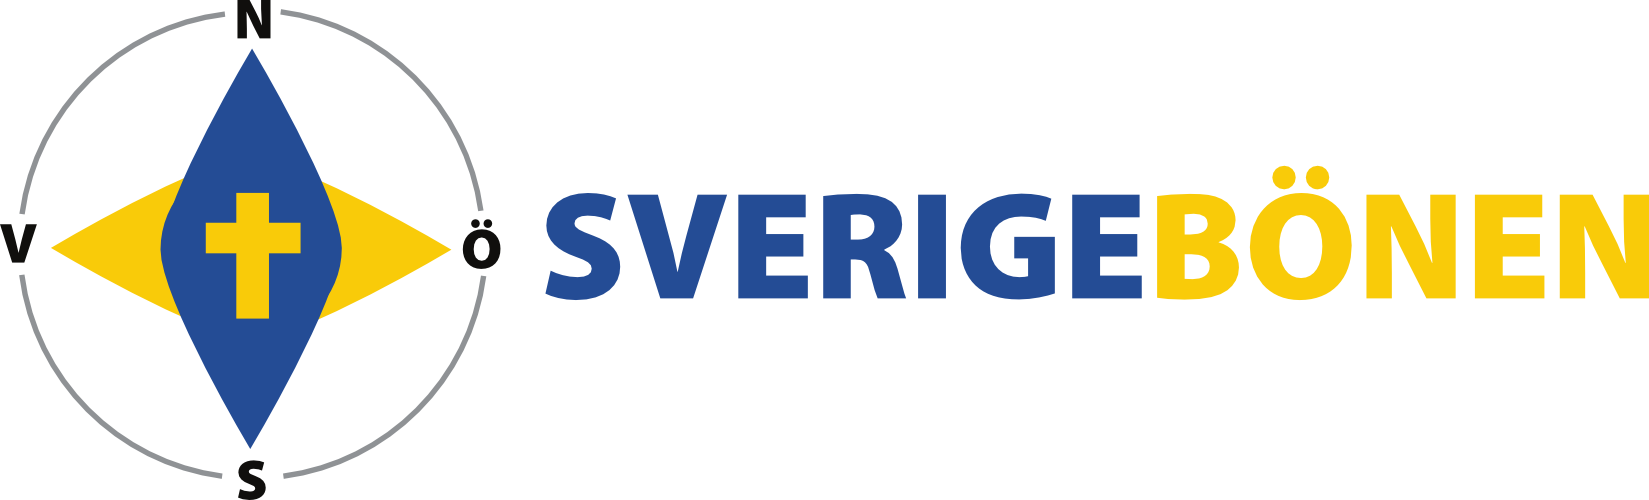 https://sverigebonen.se/filer/logo_sverigebonen.png